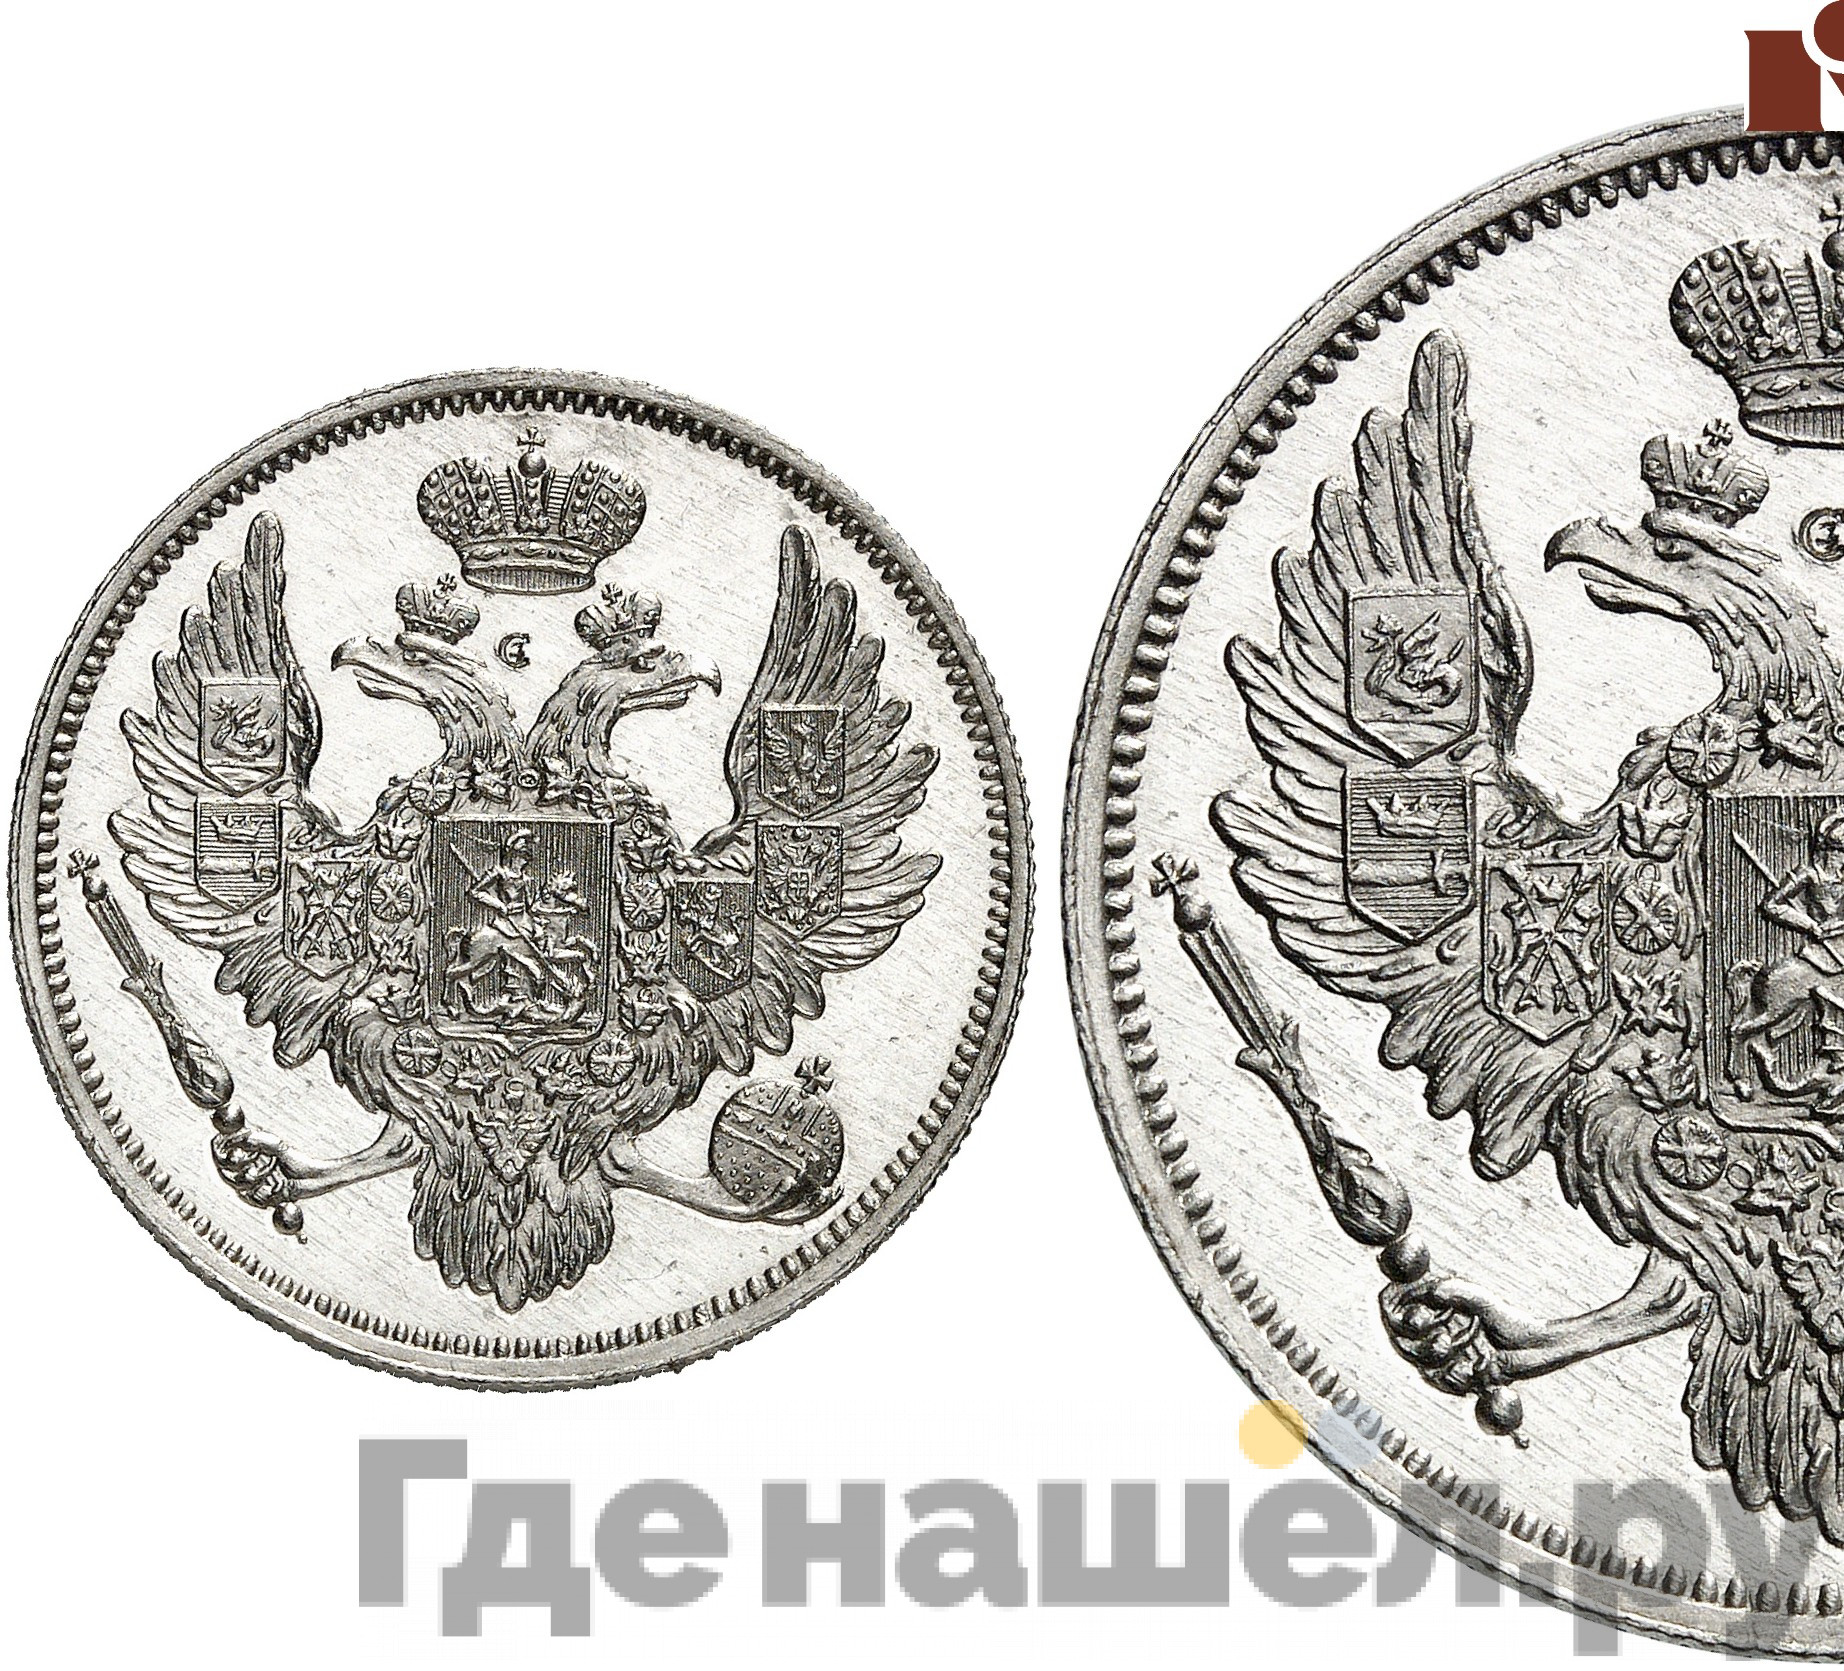 6 рублей 1839 года СПБ